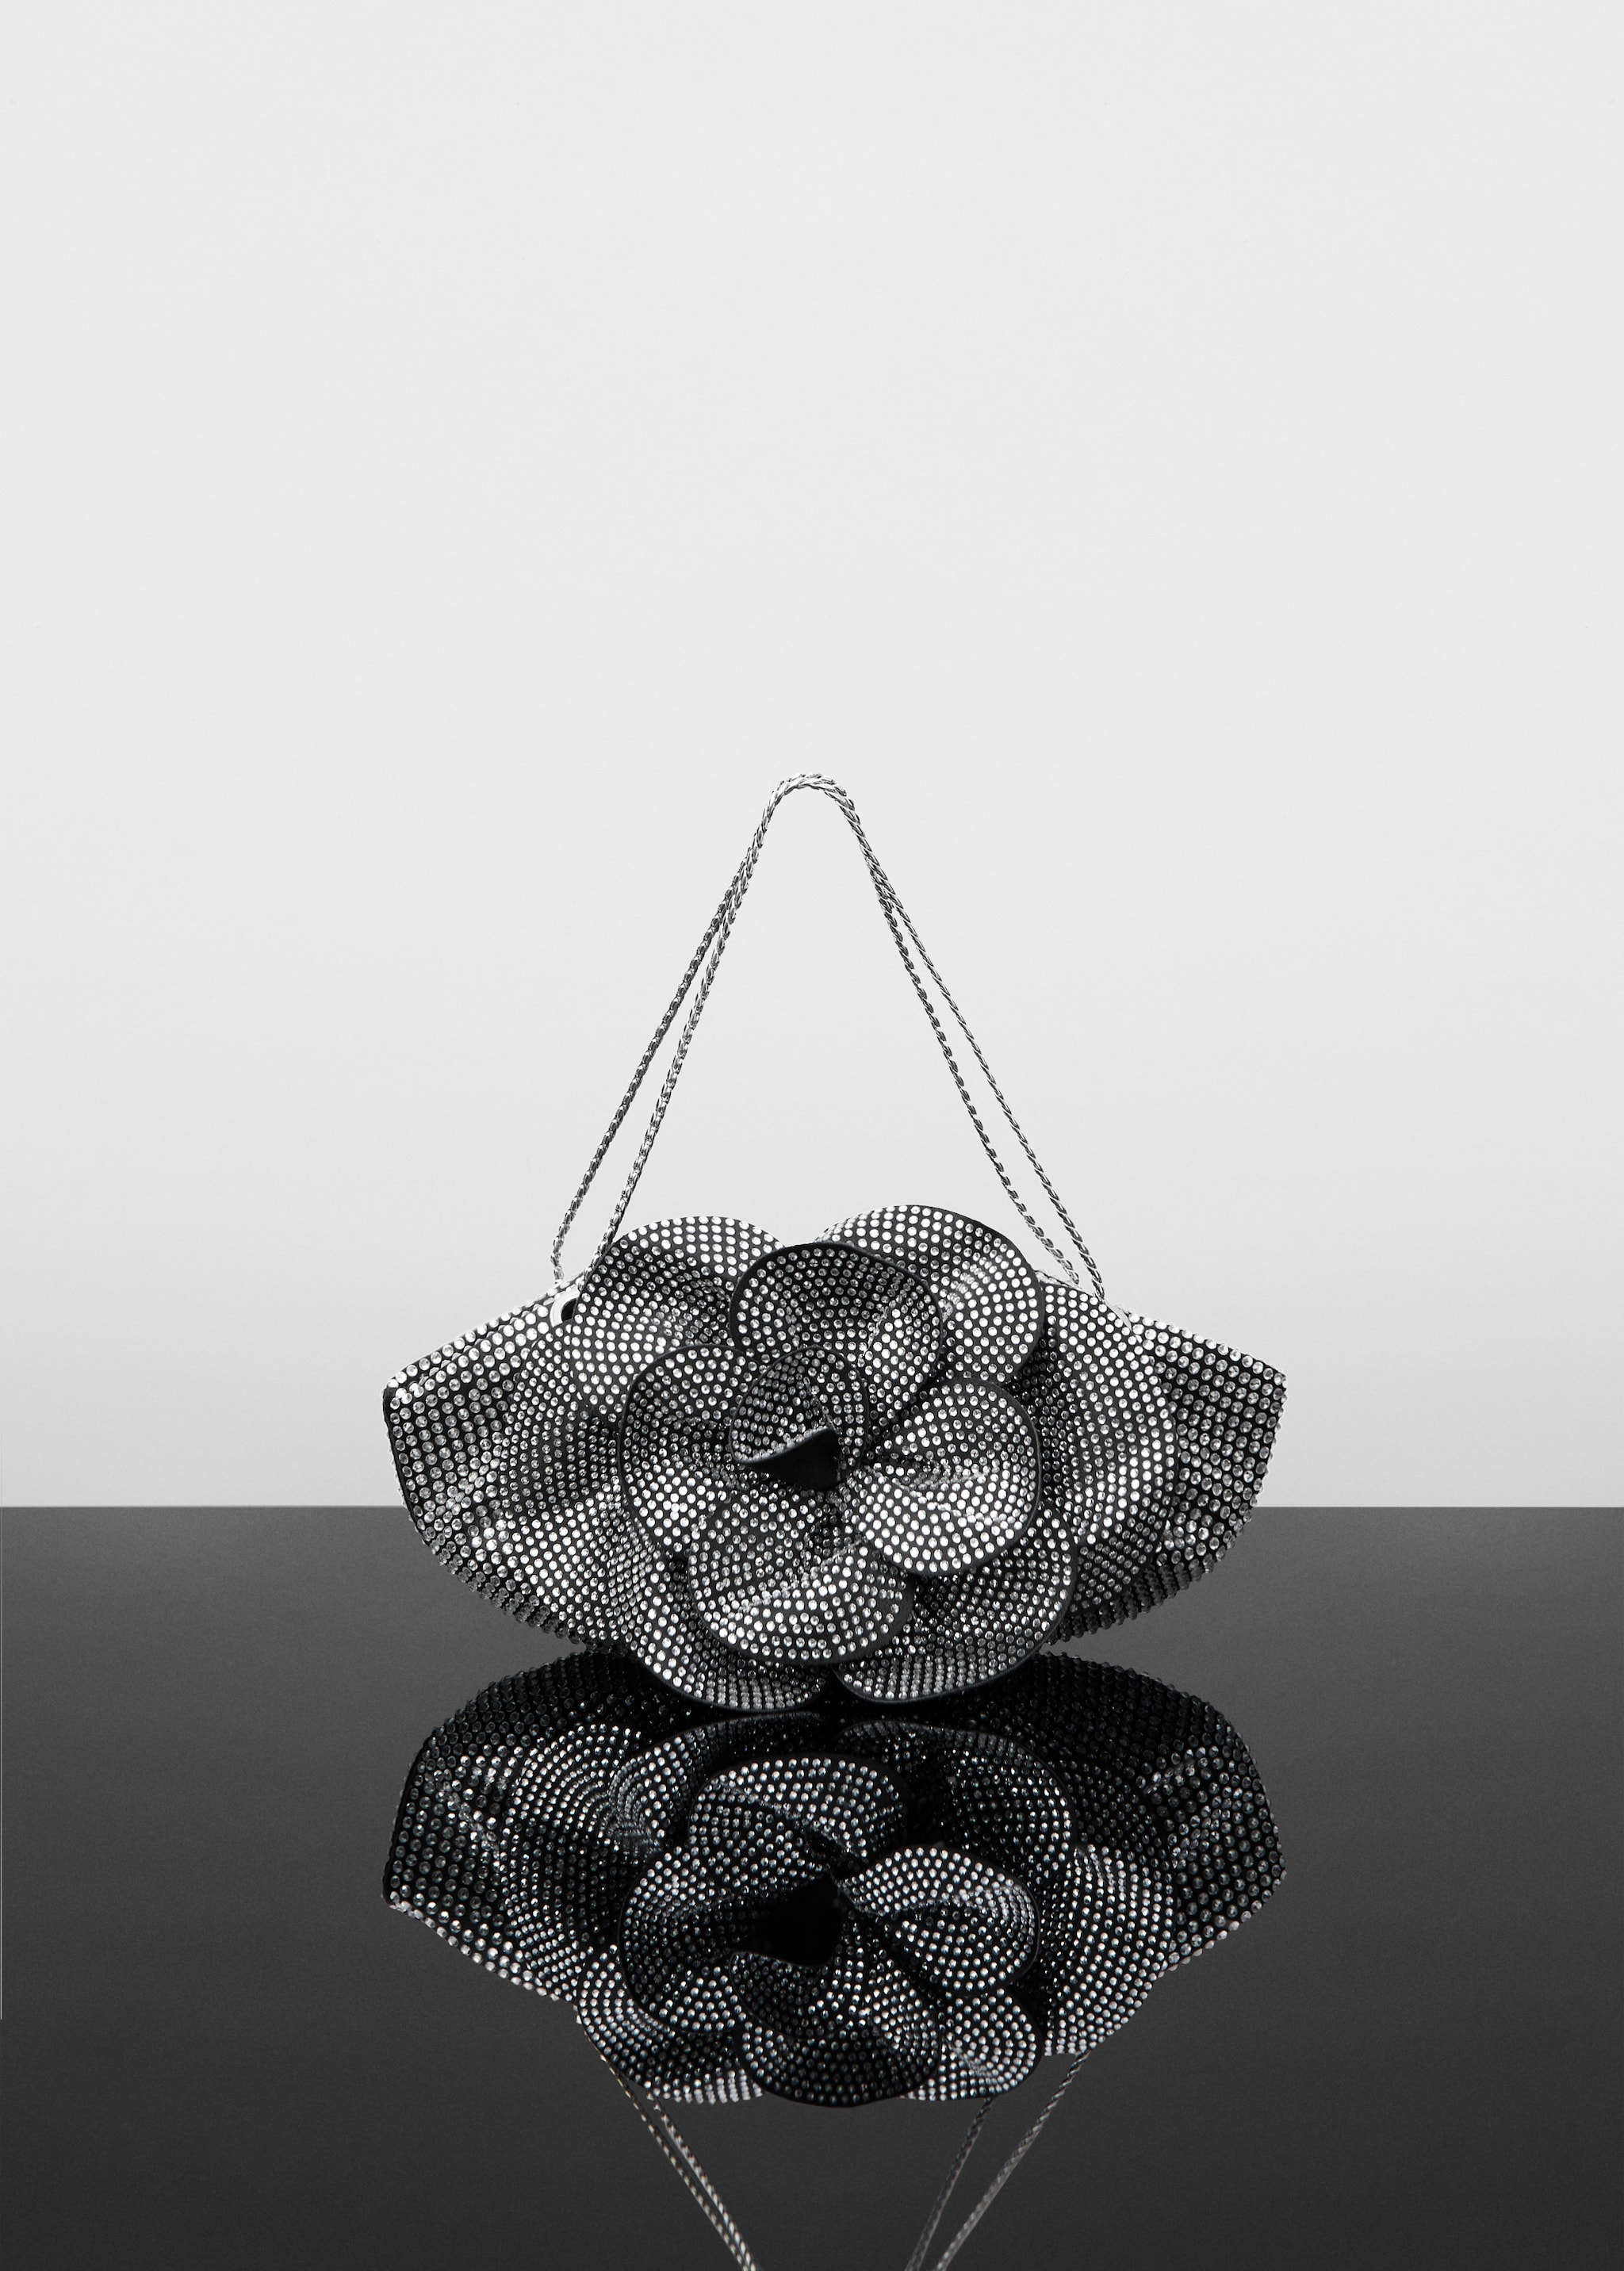 Maxi borsa fiore strass - Articolo senza modello